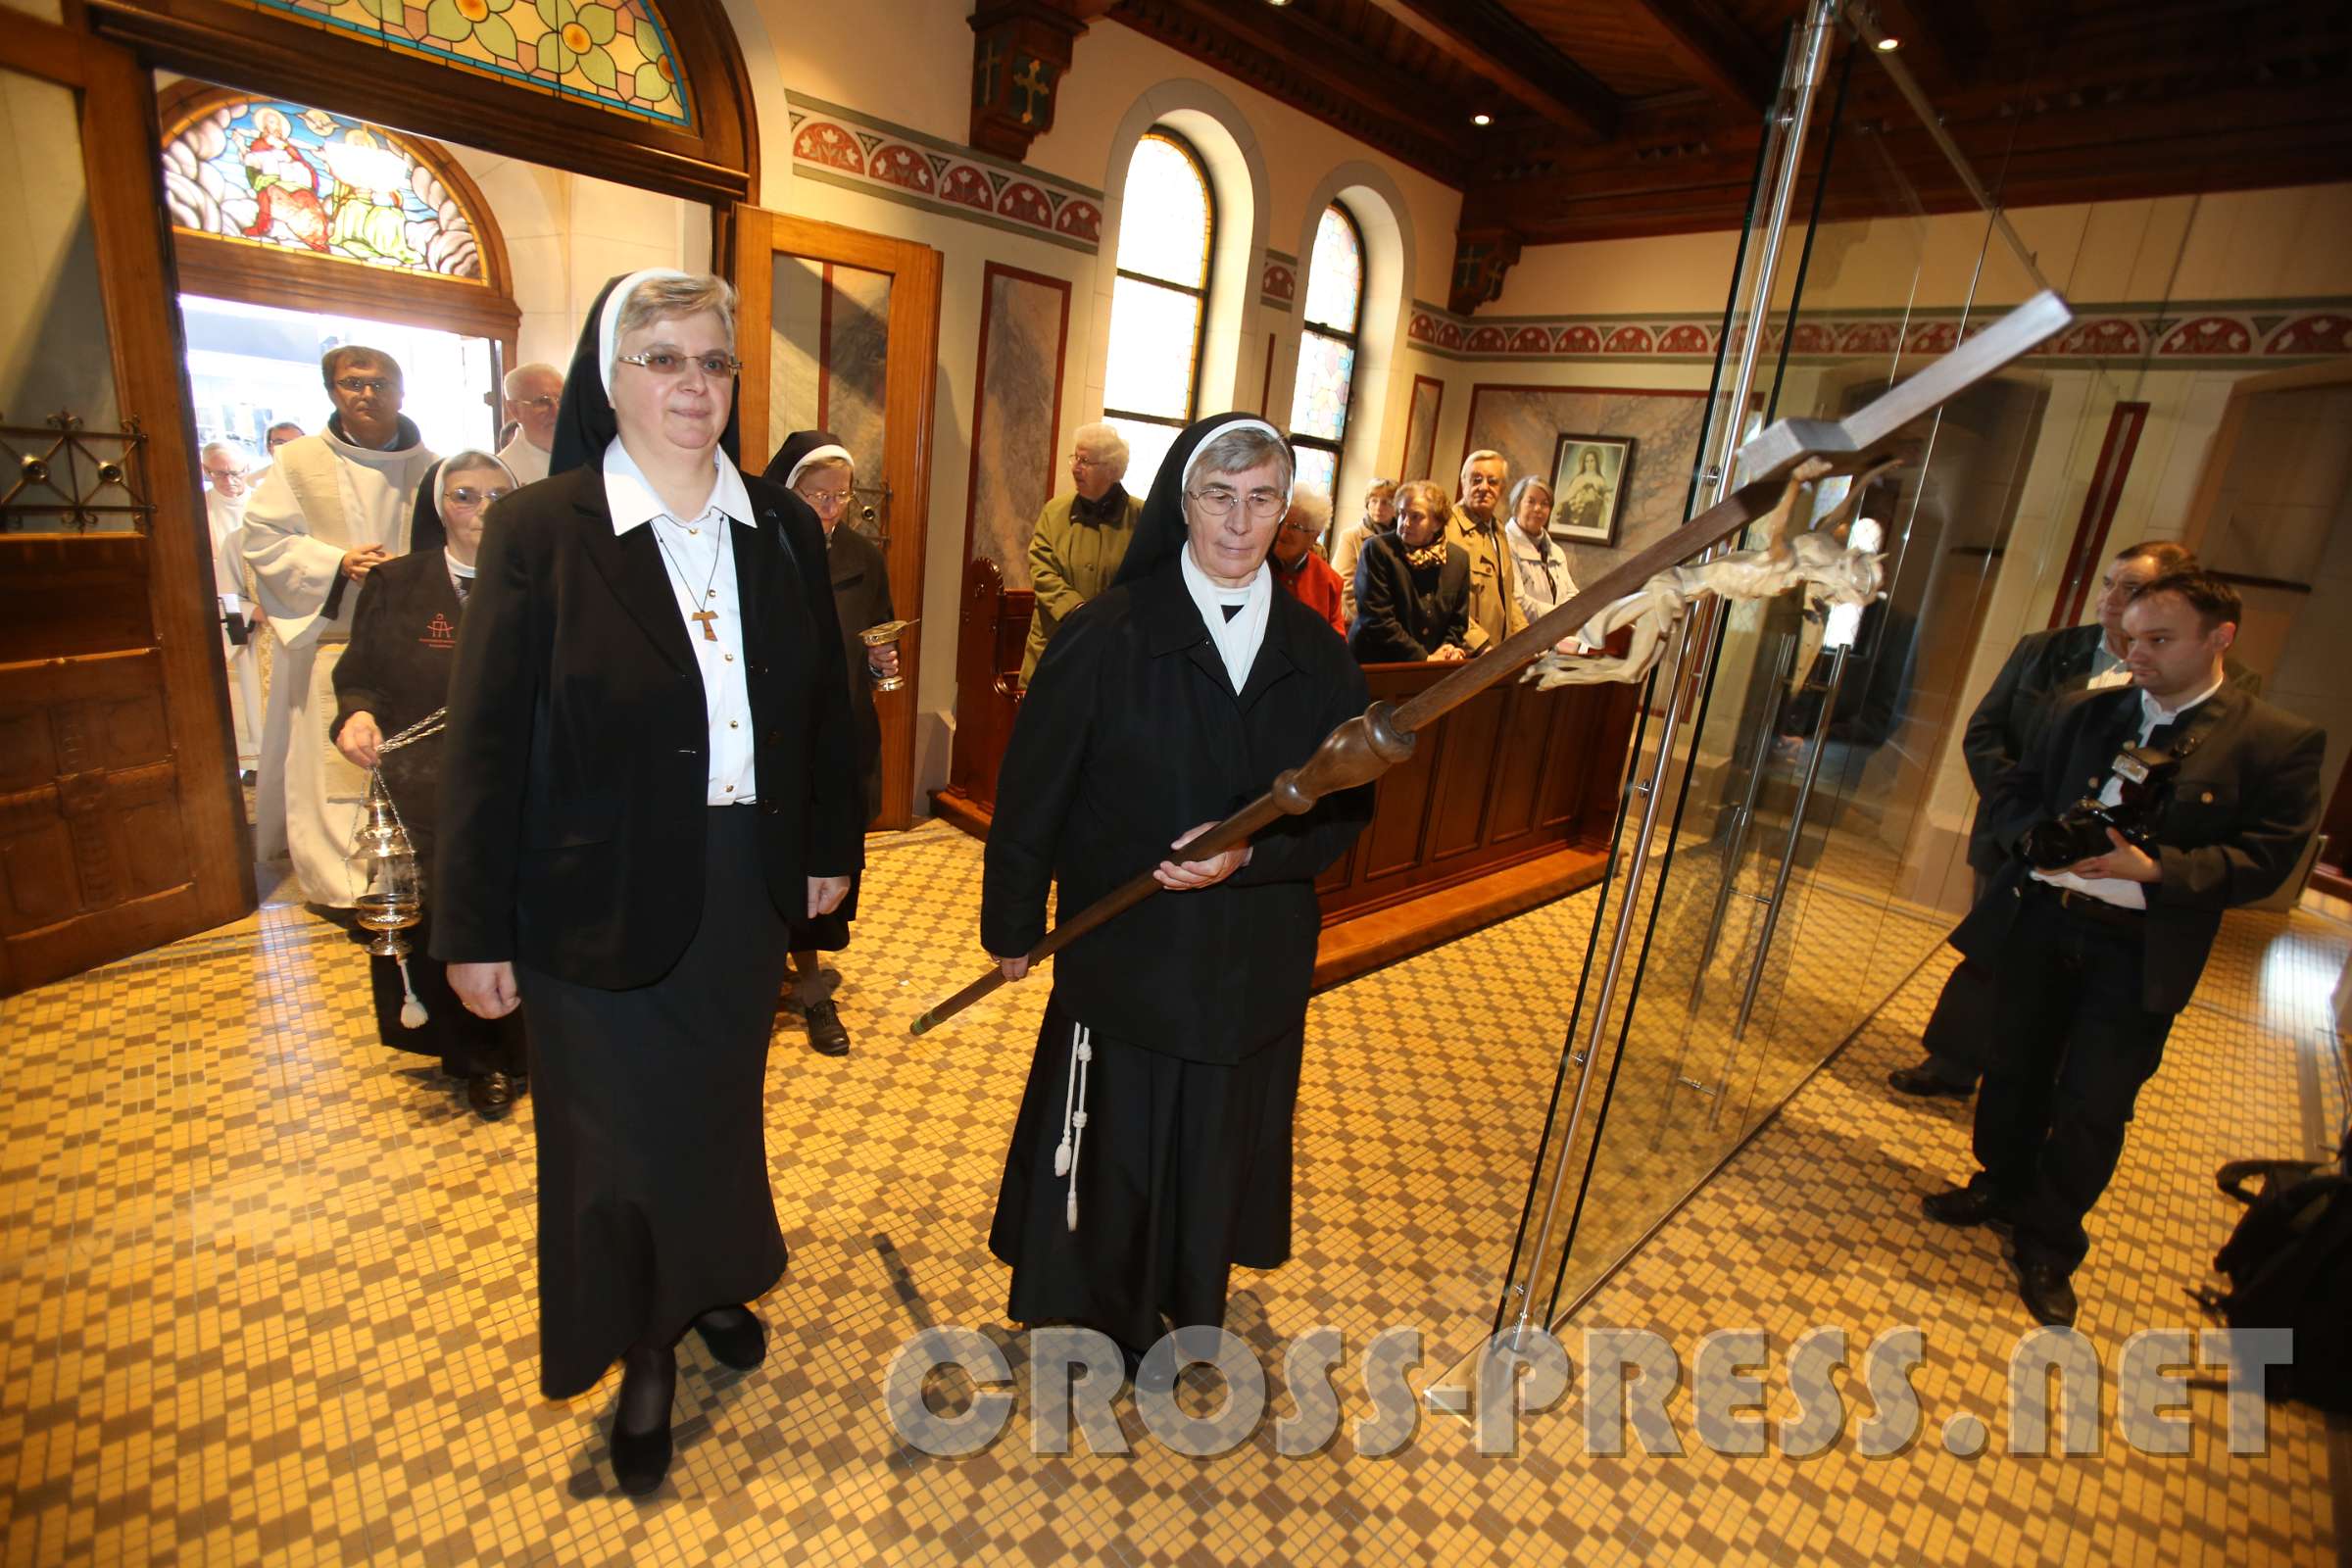 WiederEröffnung der KlosterKirche Einzug. Generaloberin Sr. Franziska Bruckner (links) hatte im Namen der Schwesterngemeinschaft zum Festgottesdienst eingeladen.